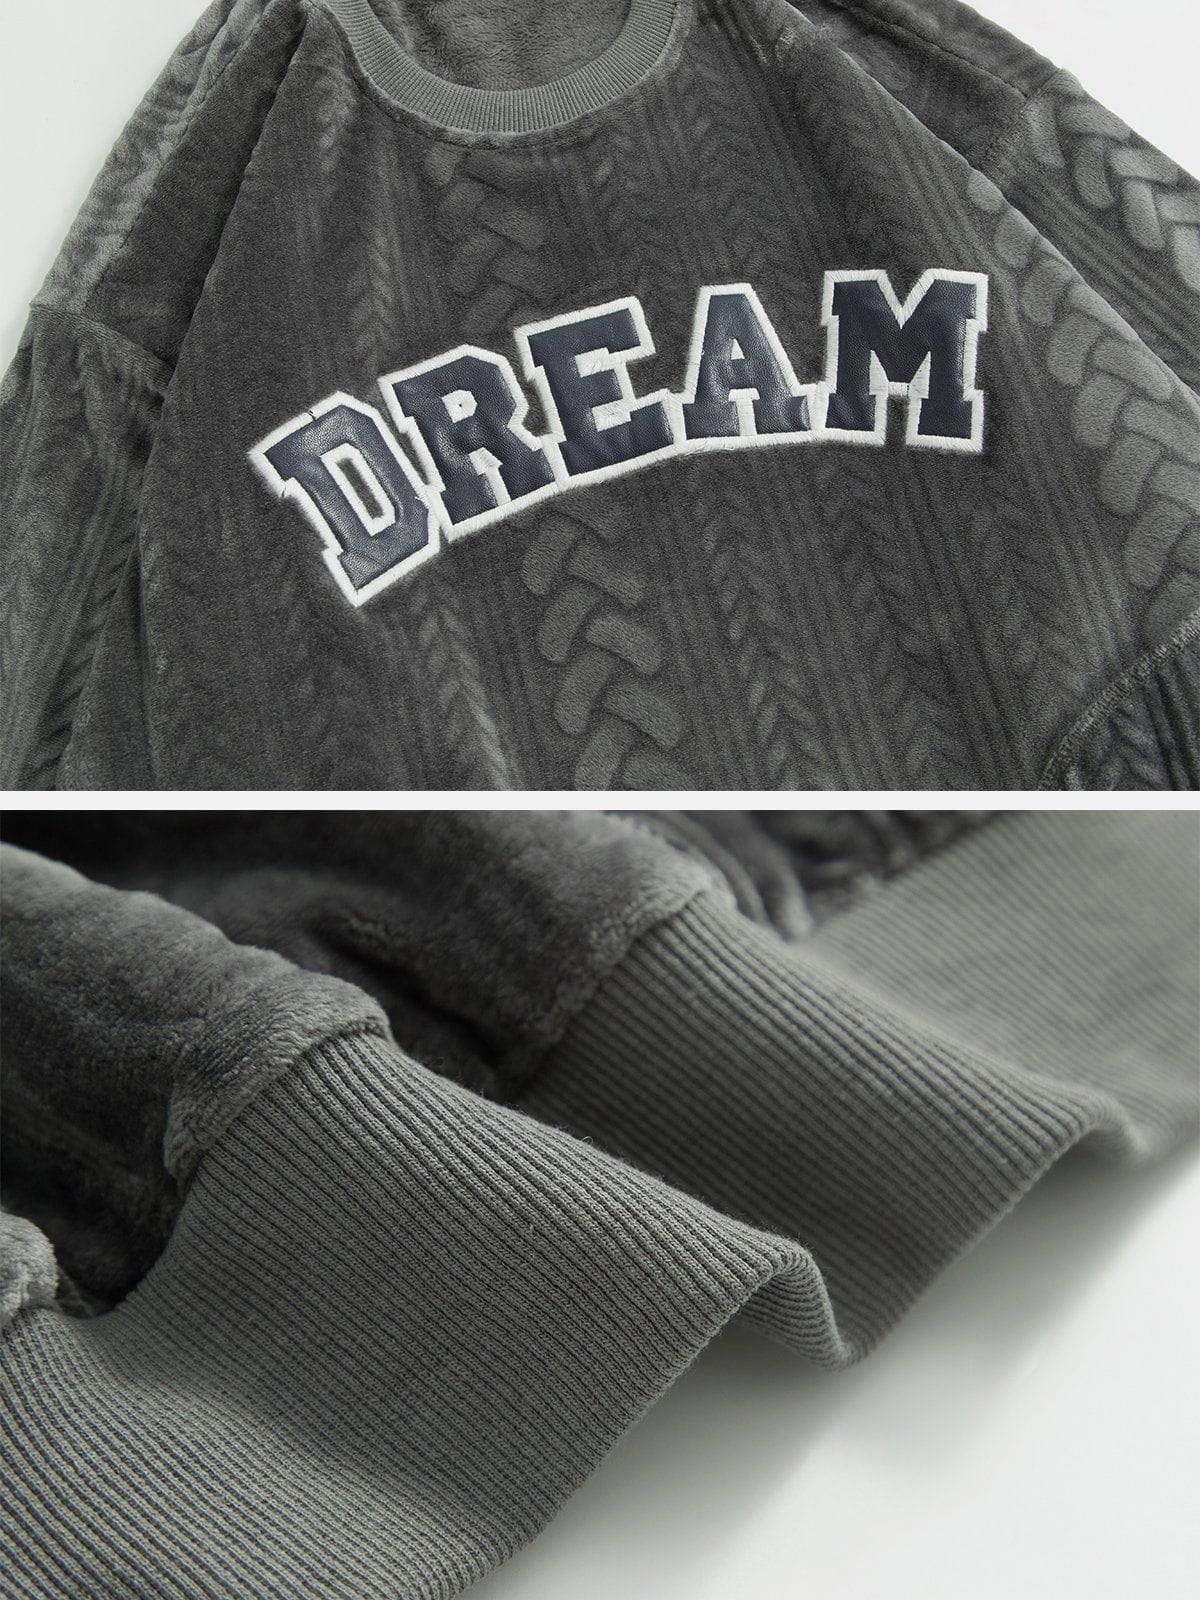 Eprezzy® - Leather Patch Embroidered Sweatshirt Streetwear Fashion - eprezzy.com